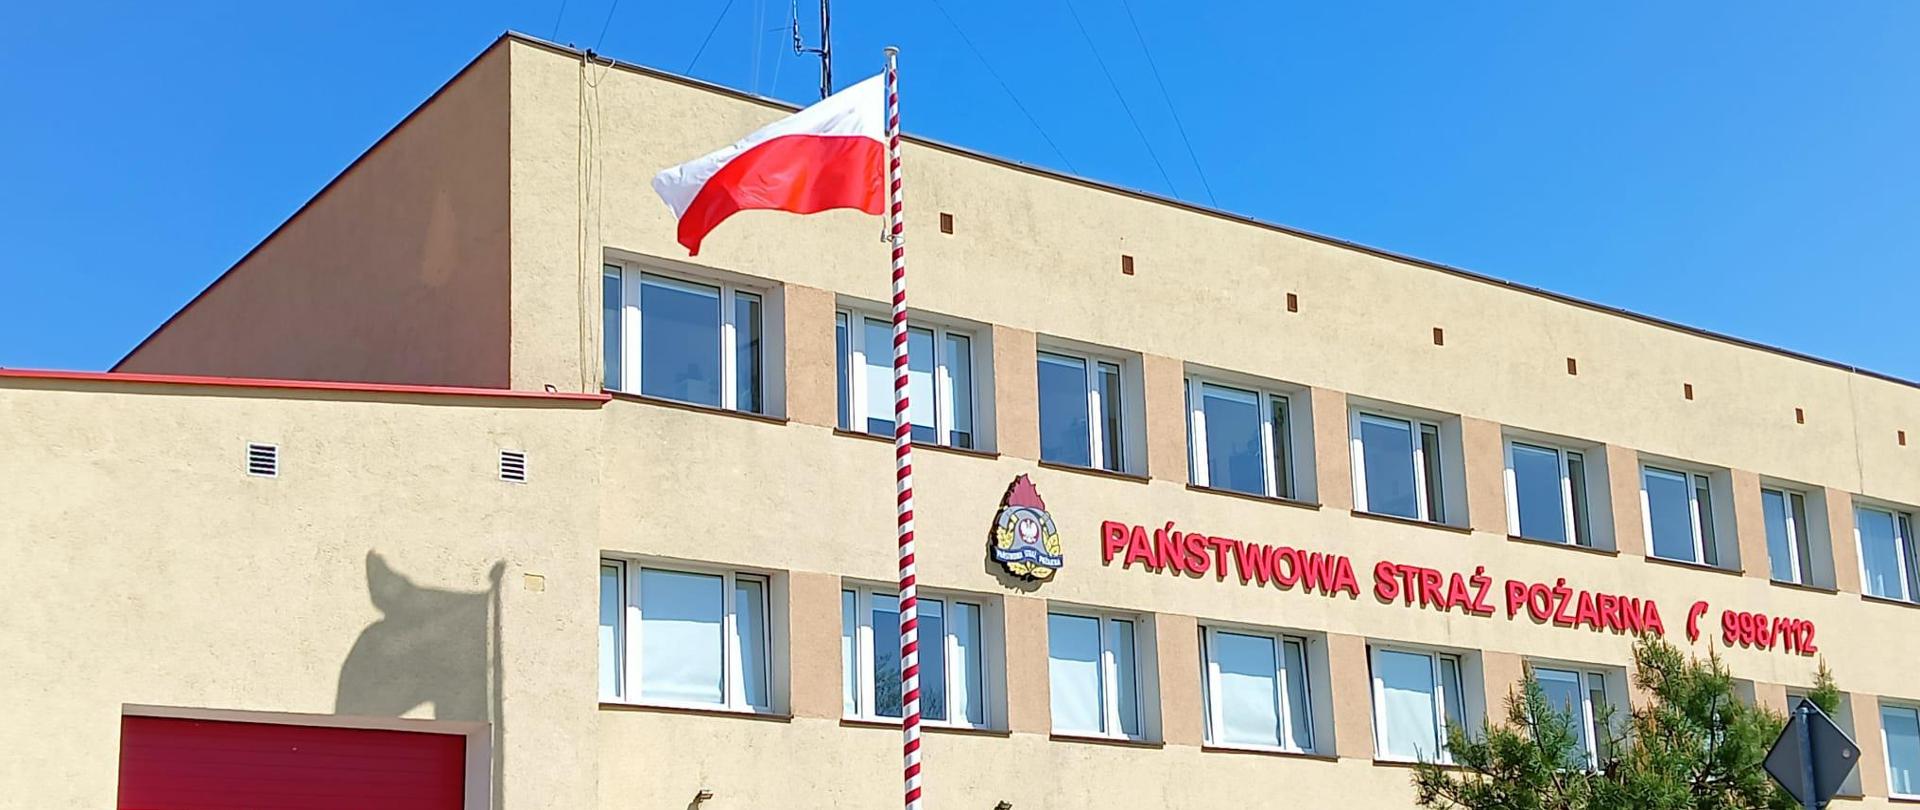 Na zdjęciu widać budynek Komendy Powiatowej Państwowej Straży Pożarnej. Przed budynkiem na maszcie powiewa Flaga.